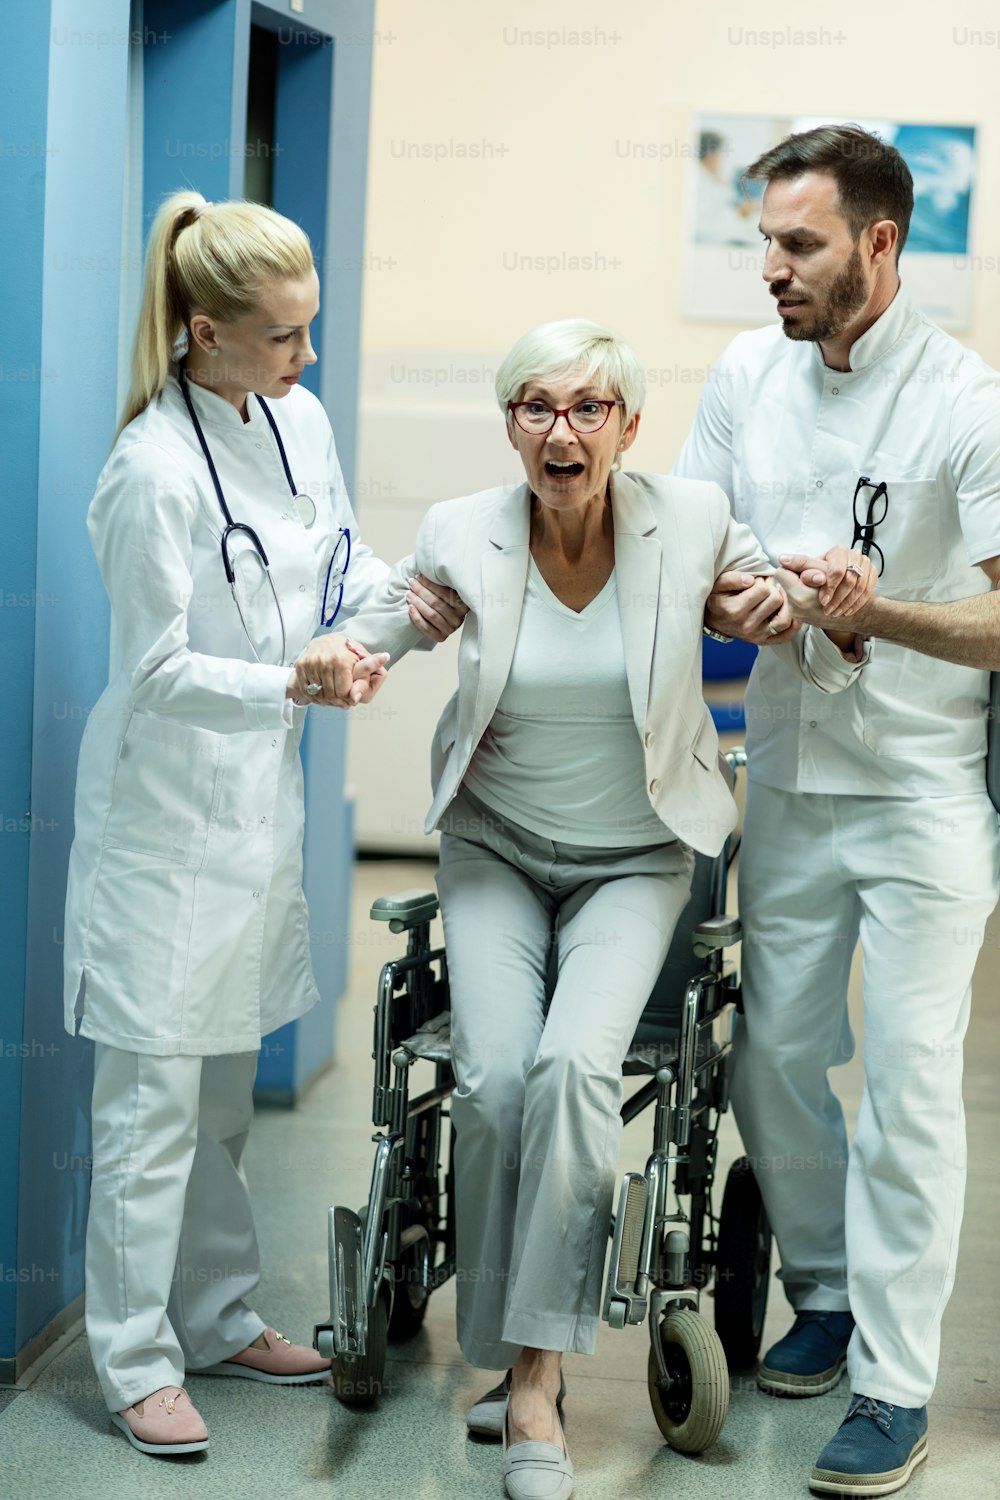 病院内の2人の医師の助けを借りて車椅子から立ち上がり、驚いた表情を浮かべる障害のある女性患者。